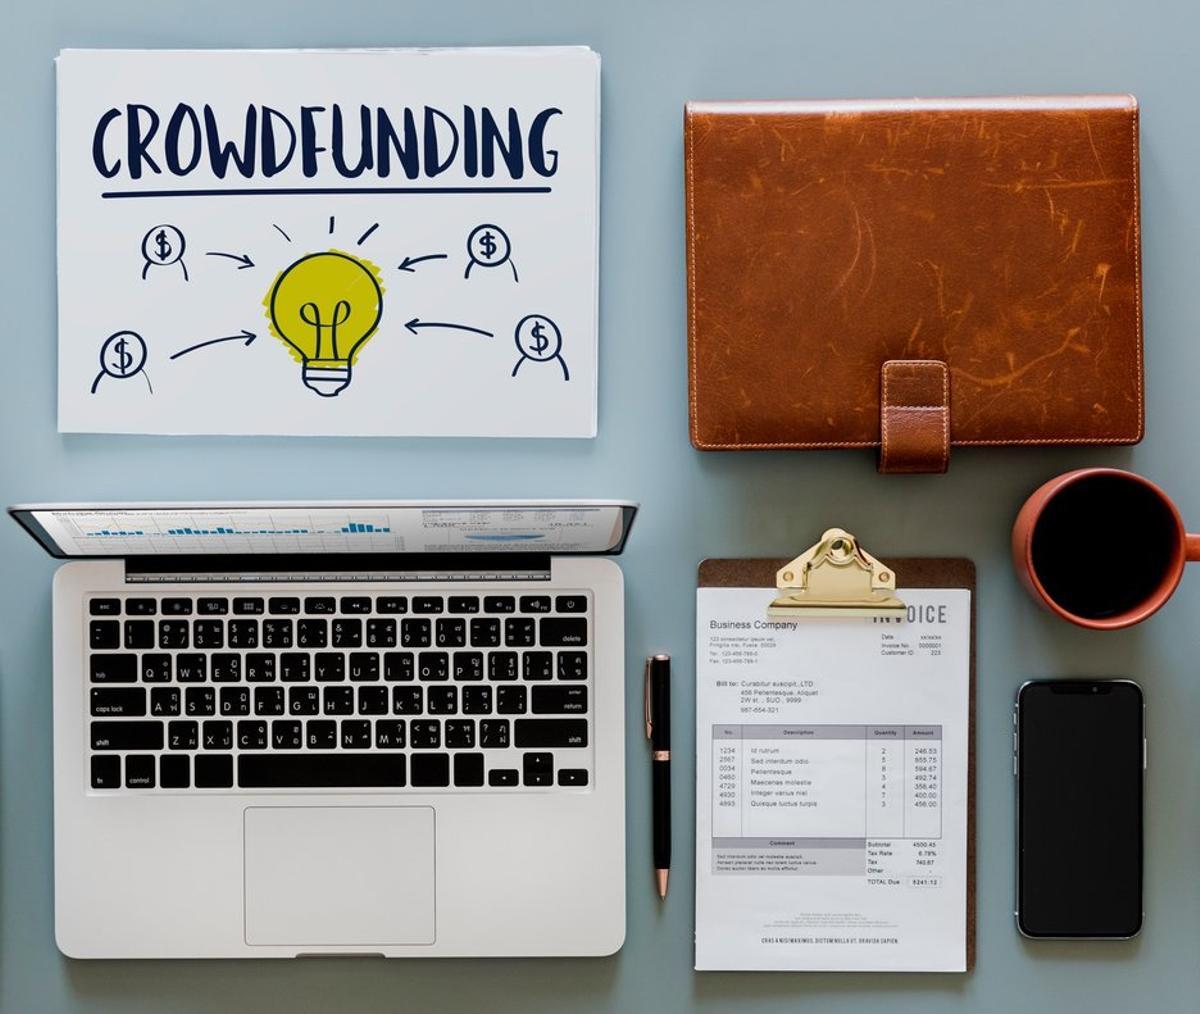 Pepe Borrell, director general de Crowdcube para el sur de Europa señala que “cada tipología de crowdfunding tiene sus peculiaridades” y dependiendo del objetivo que quieras alcanzar recomienda realizar estos tipos de financiación participativa